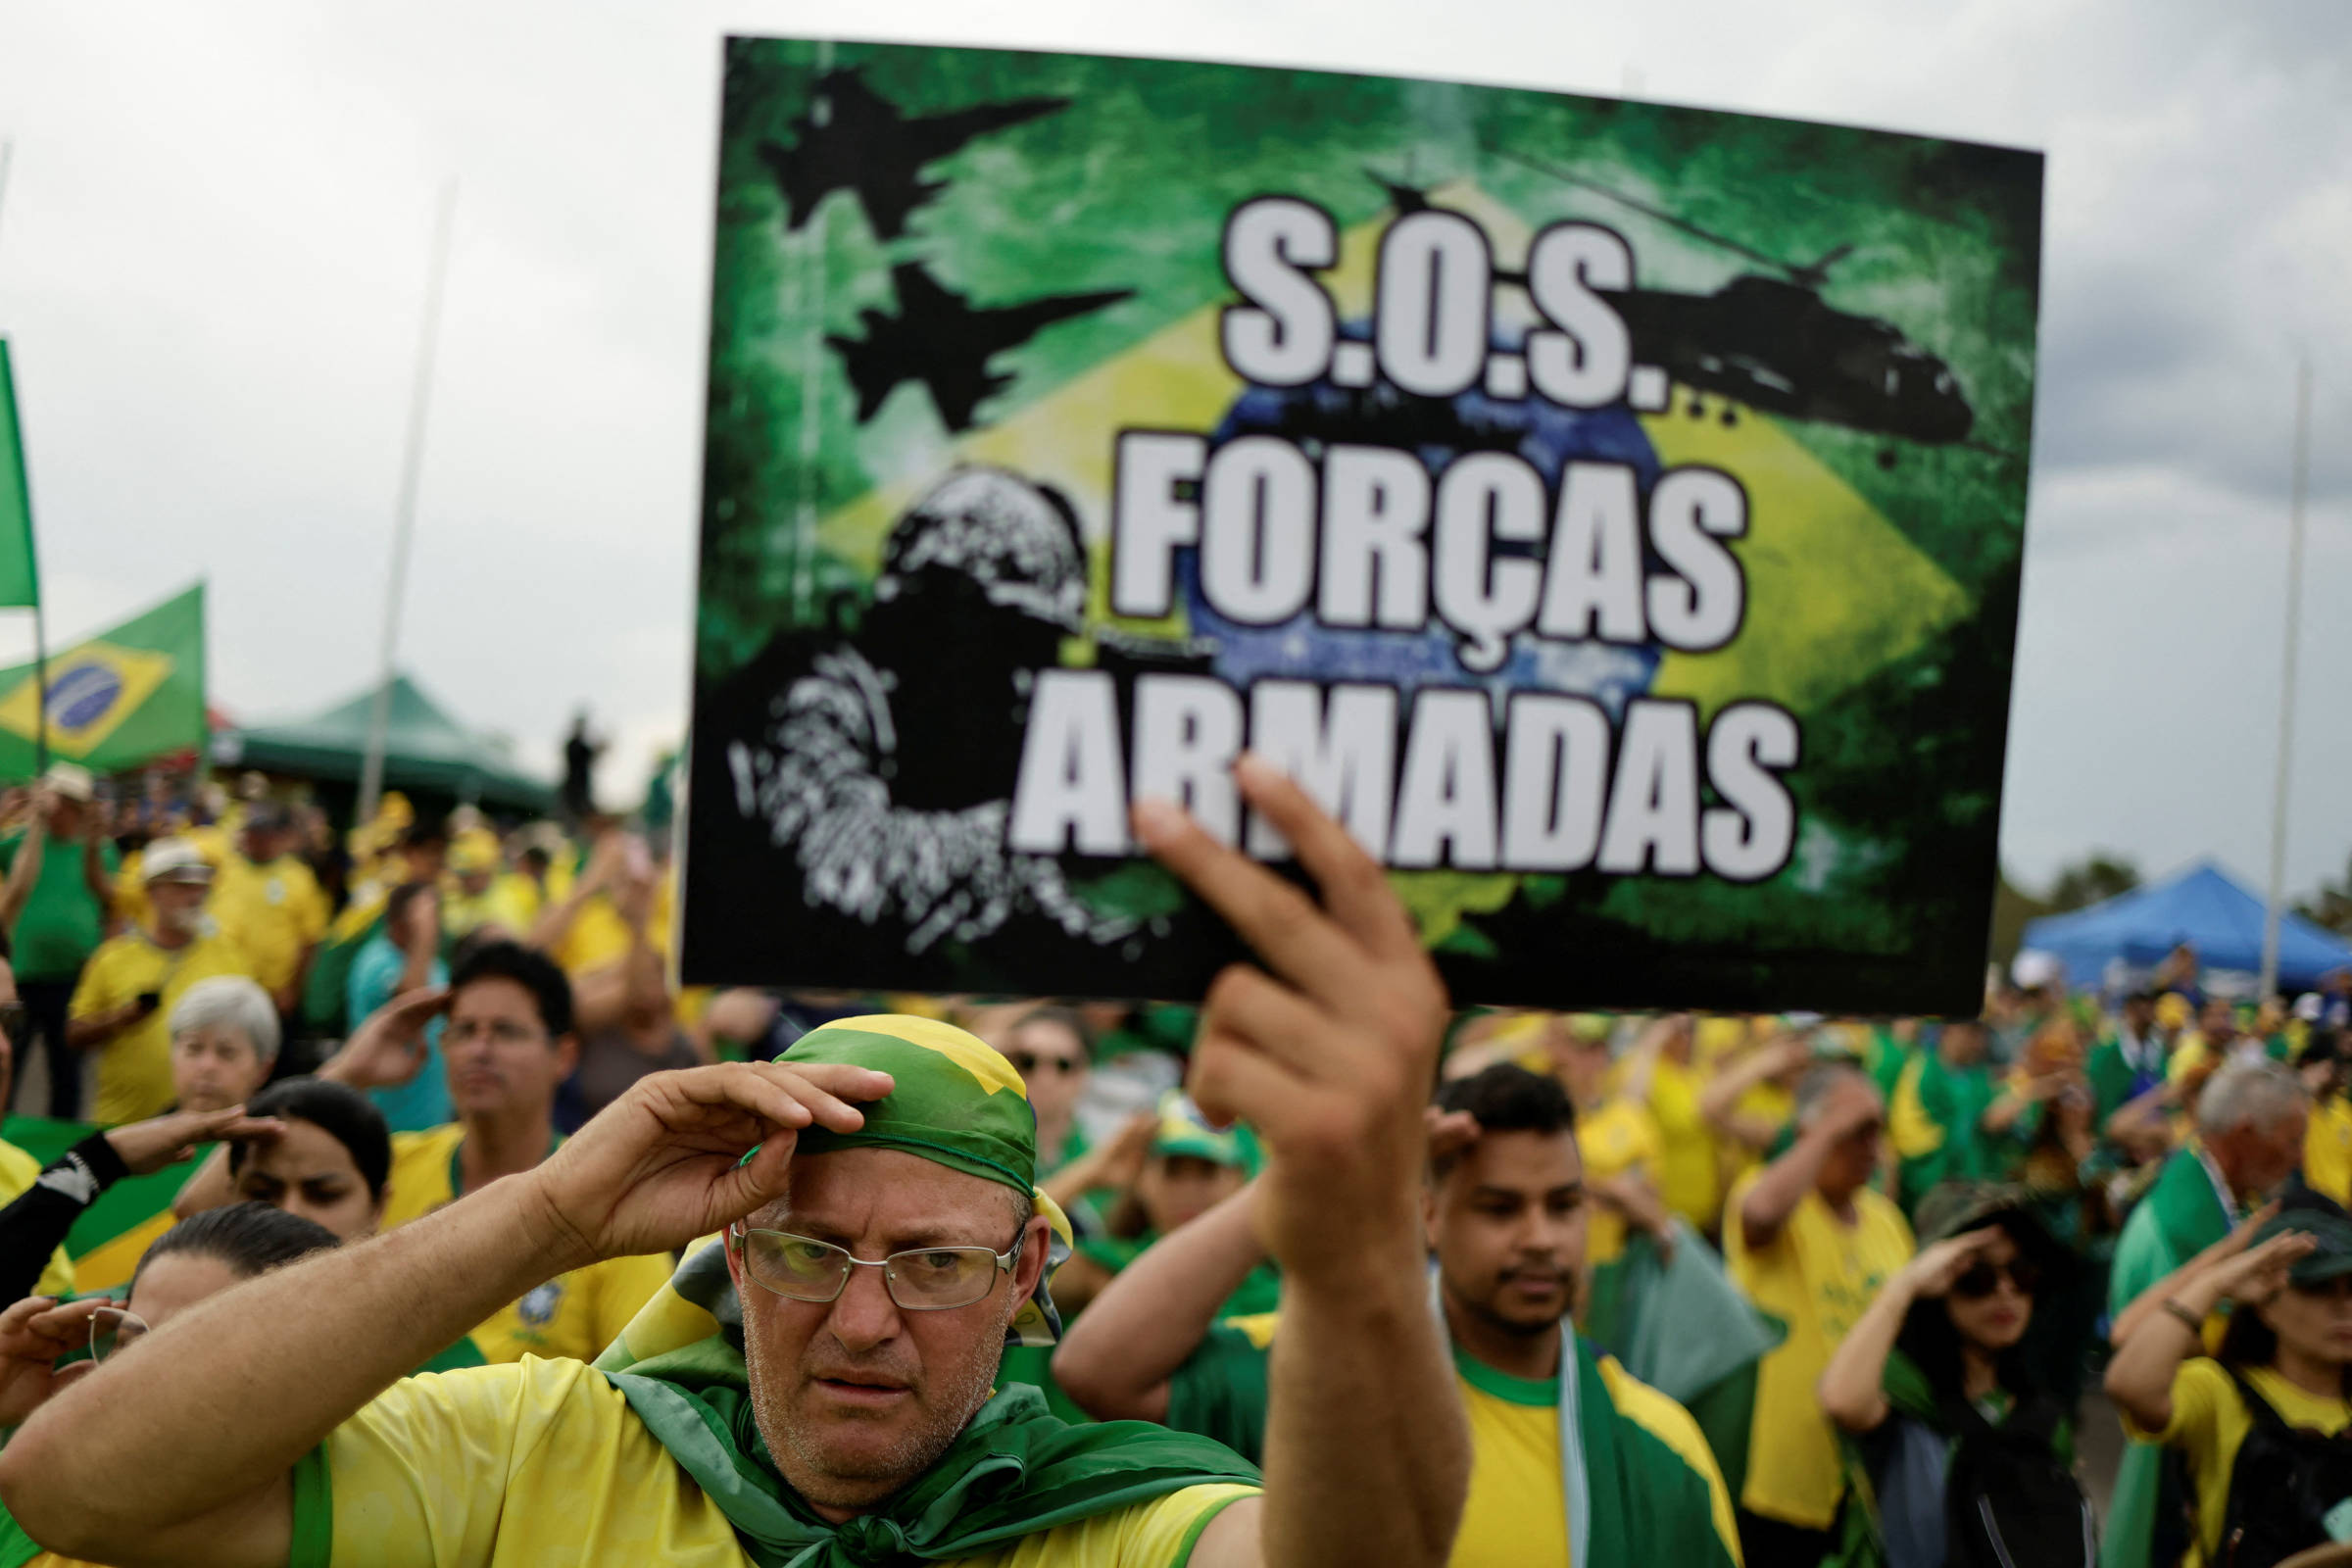 Dia do Exército Brasileiro 2022: veja o texto alusivo à data • PortalR3 •  Criando Opiniões